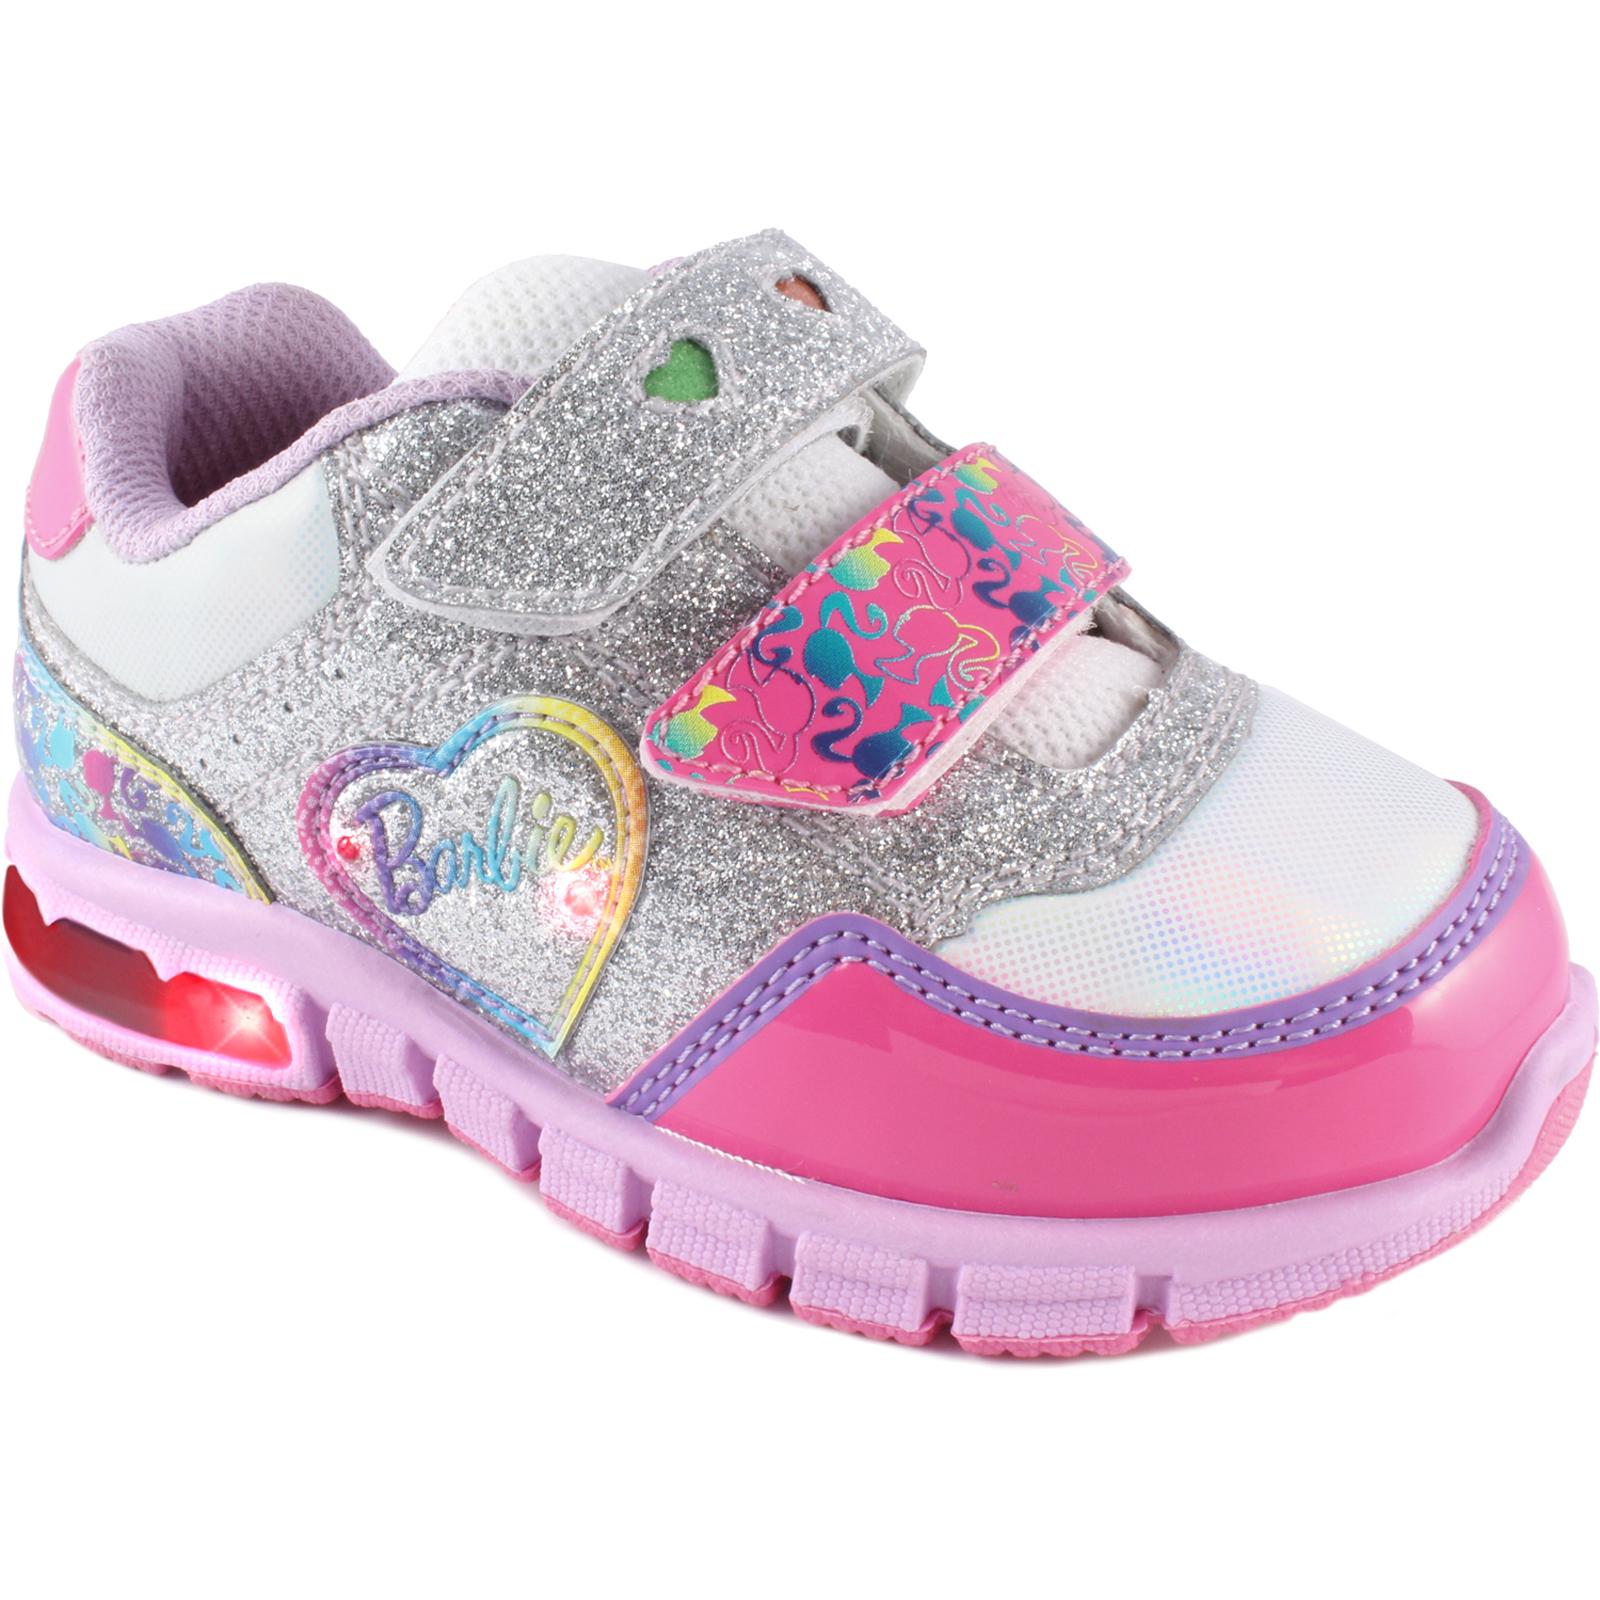 Mattel Barbie Toddler Girl's Silver/Pink/White Light-Up Sneaker